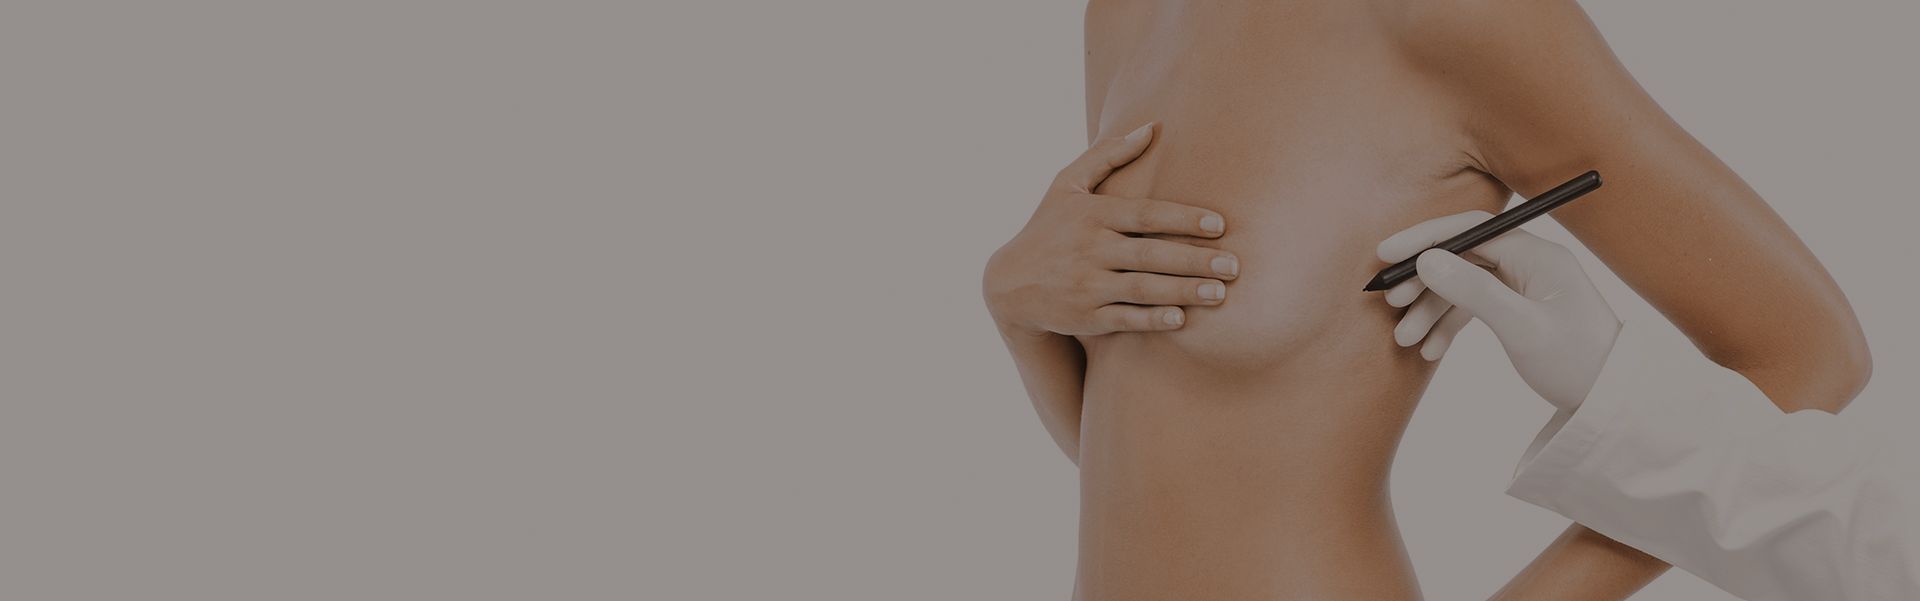 Маммопластика – пластика грудных желез. фото до и после, стоимость, отзывы